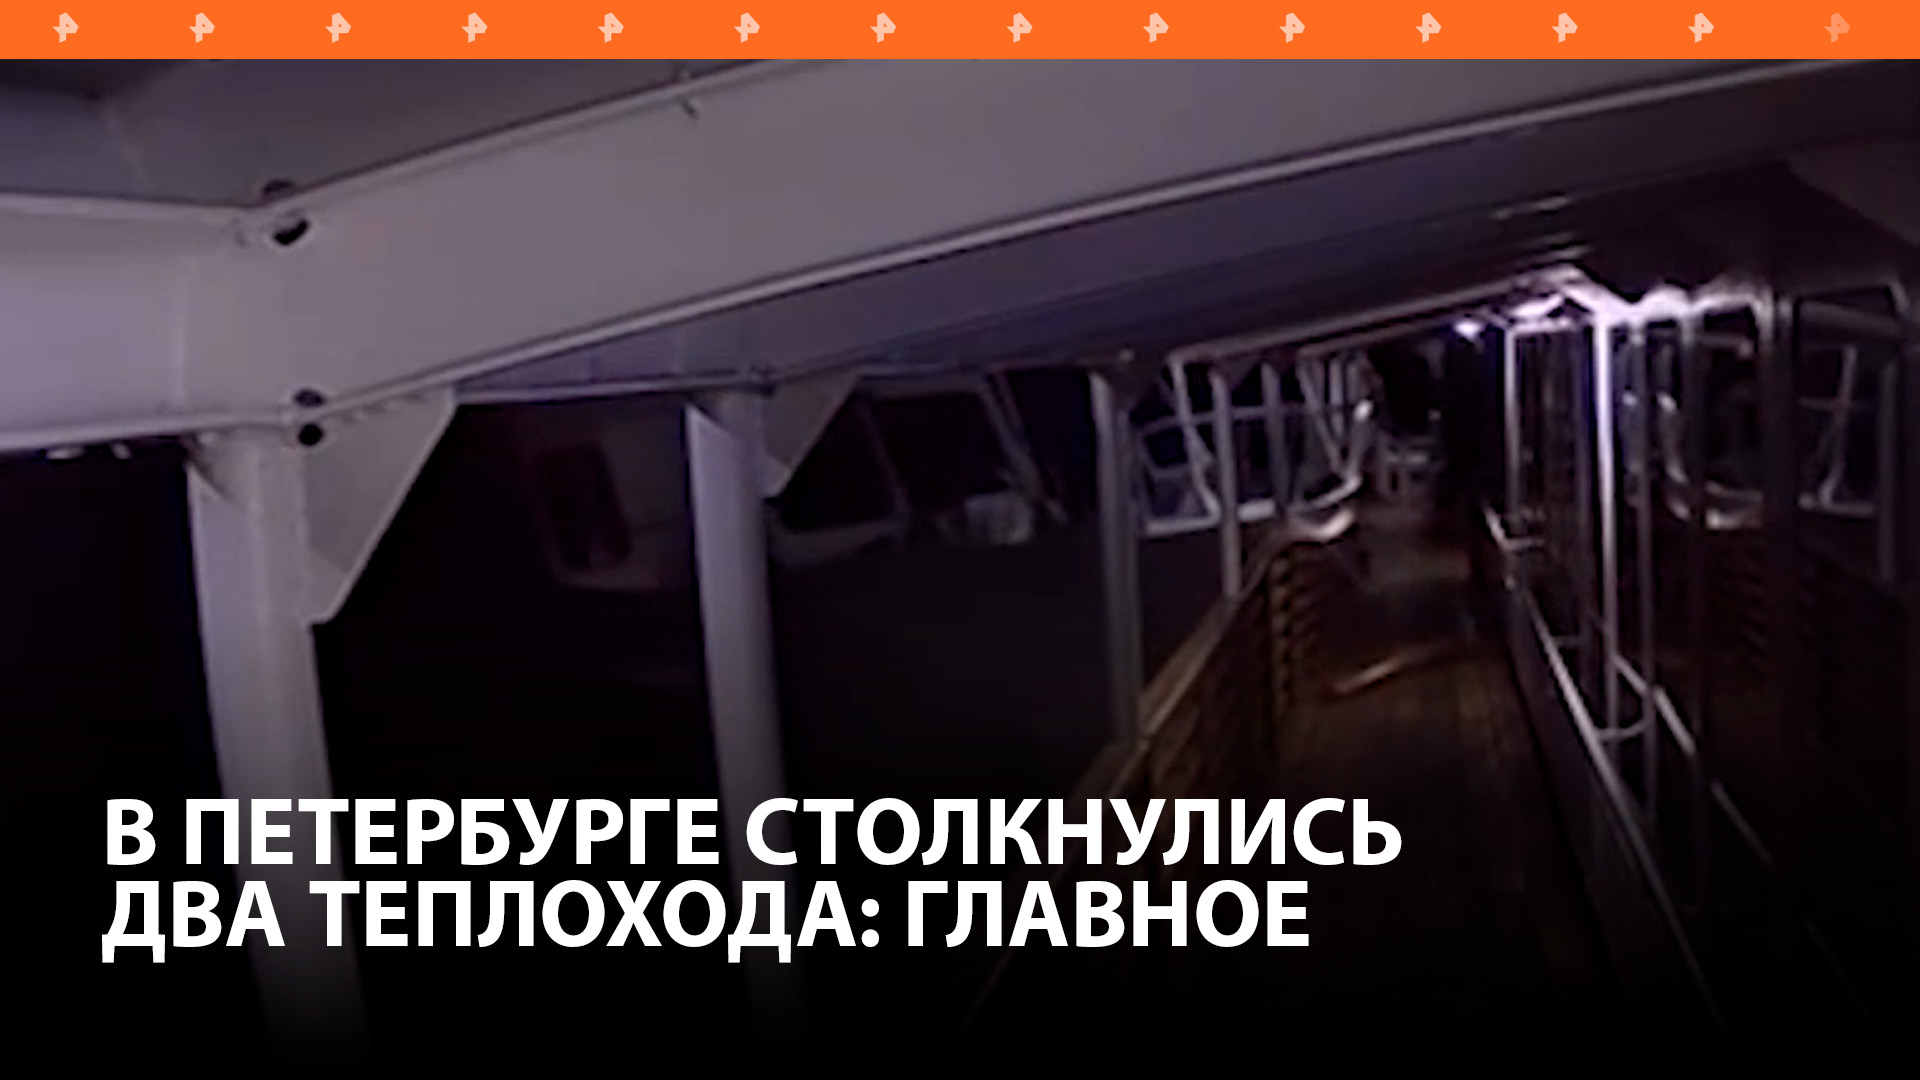 Два теплохода столкнулись в Петербурге: главное об инциденте / РЕН Новости